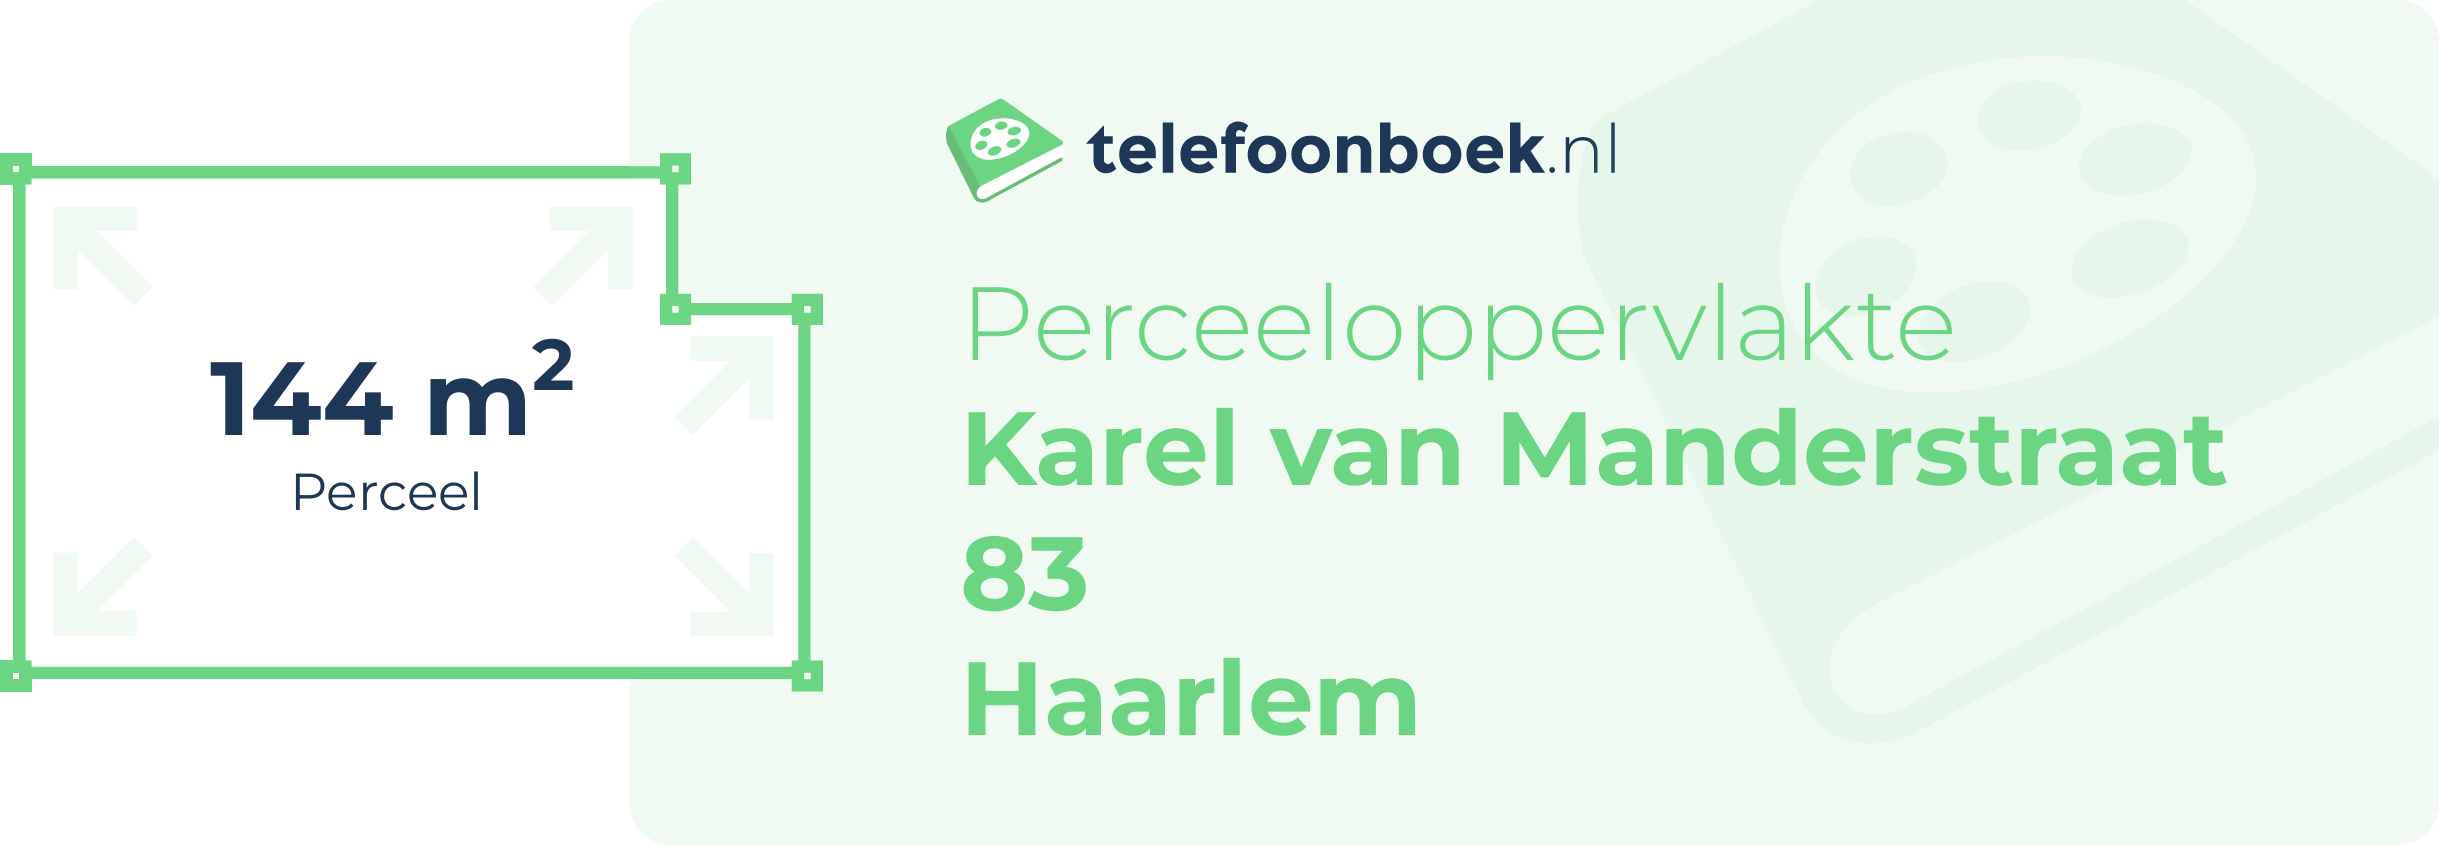 Perceeloppervlakte Karel Van Manderstraat 83 Haarlem